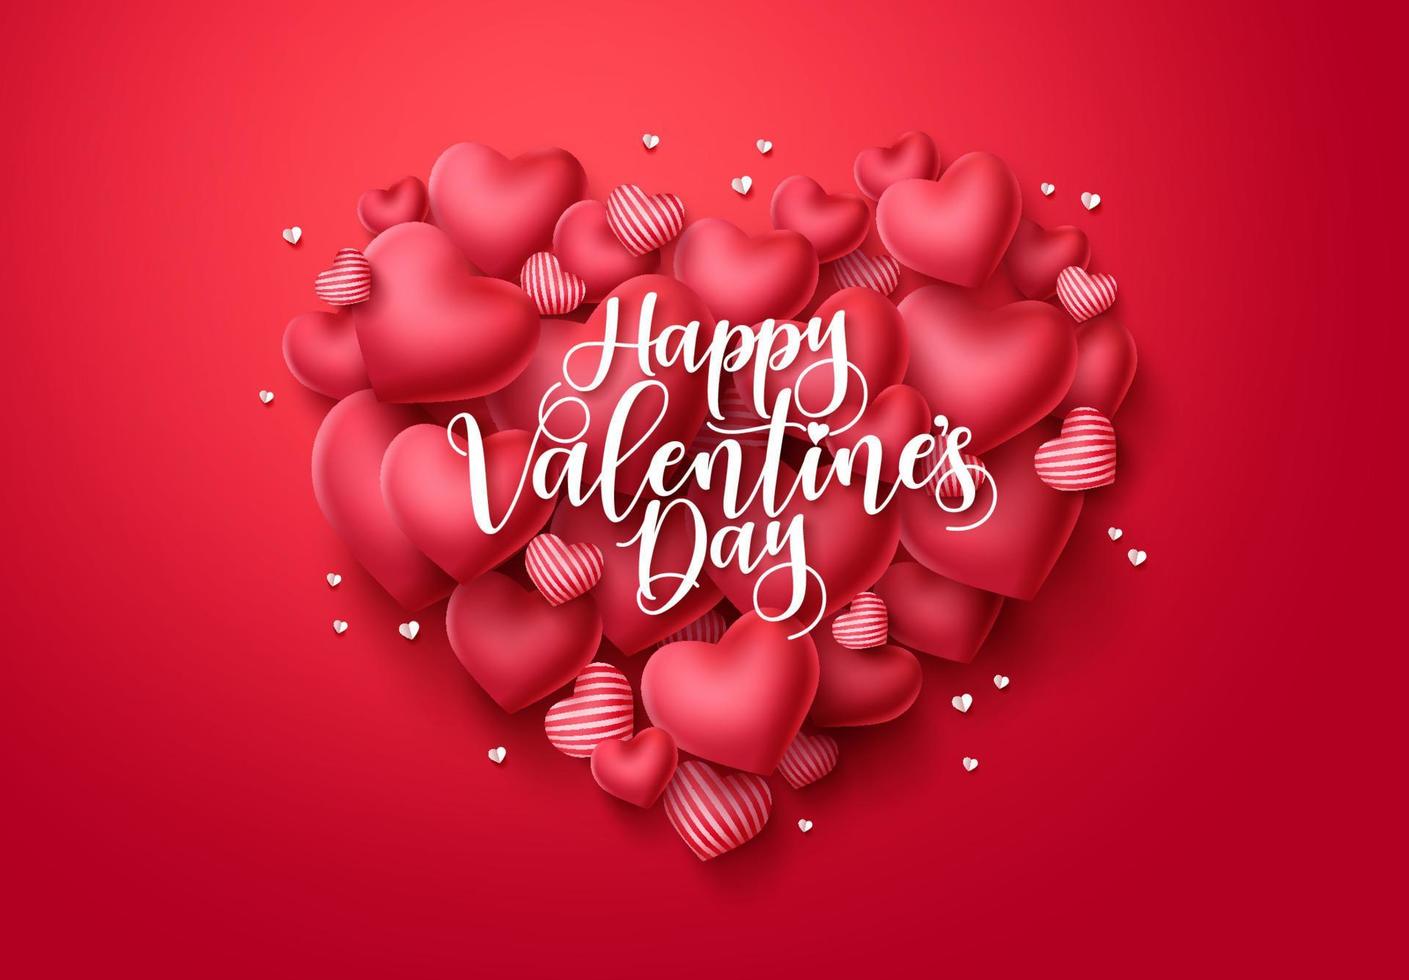 alla hjärtans dag hjärtan vektor gratulationskort. glad alla hjärtans dag text med hjärtformade element i röd bakgrund. vektor illustration.